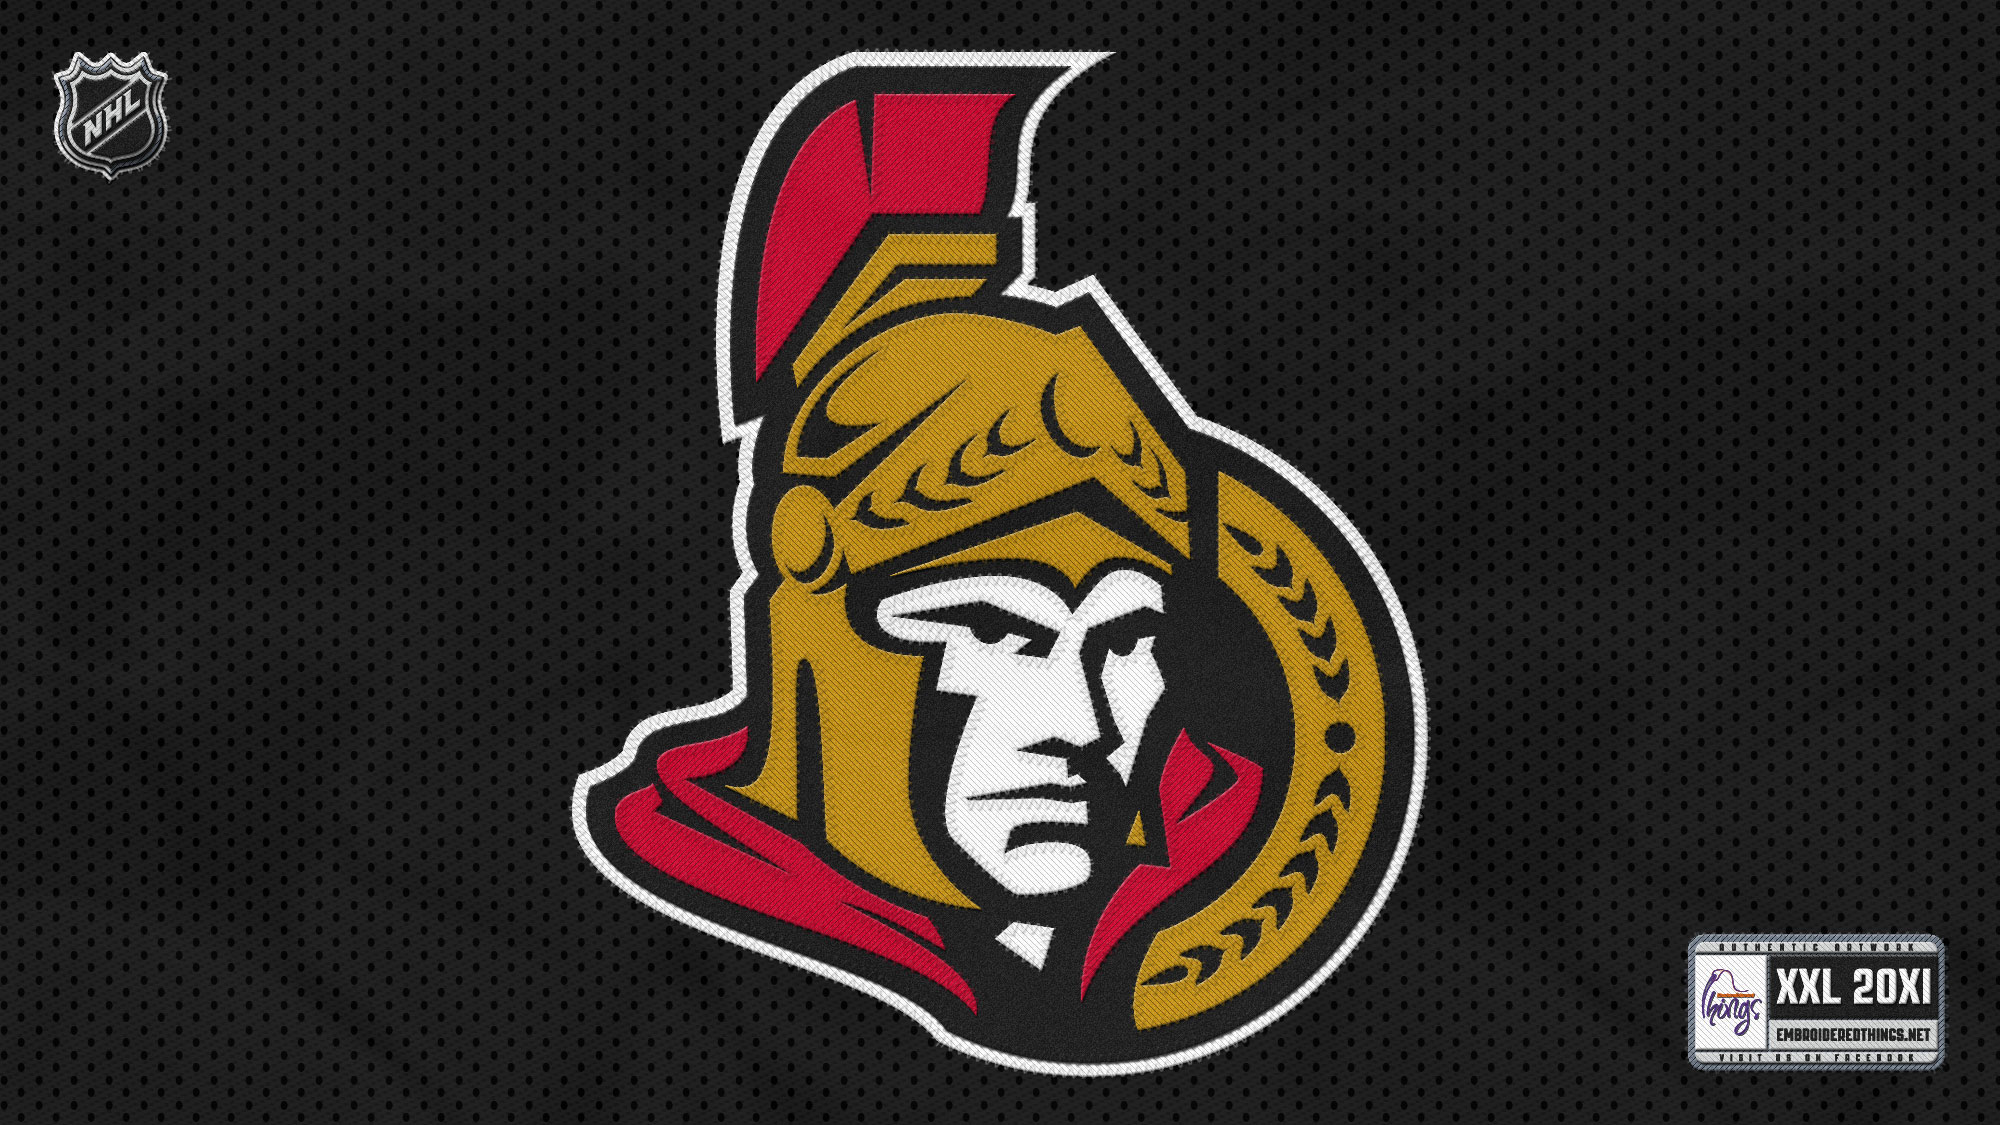 Ottawa Senators Backgrounds, Compatible - PC, Mobile, Gadgets| 2000x1125 px